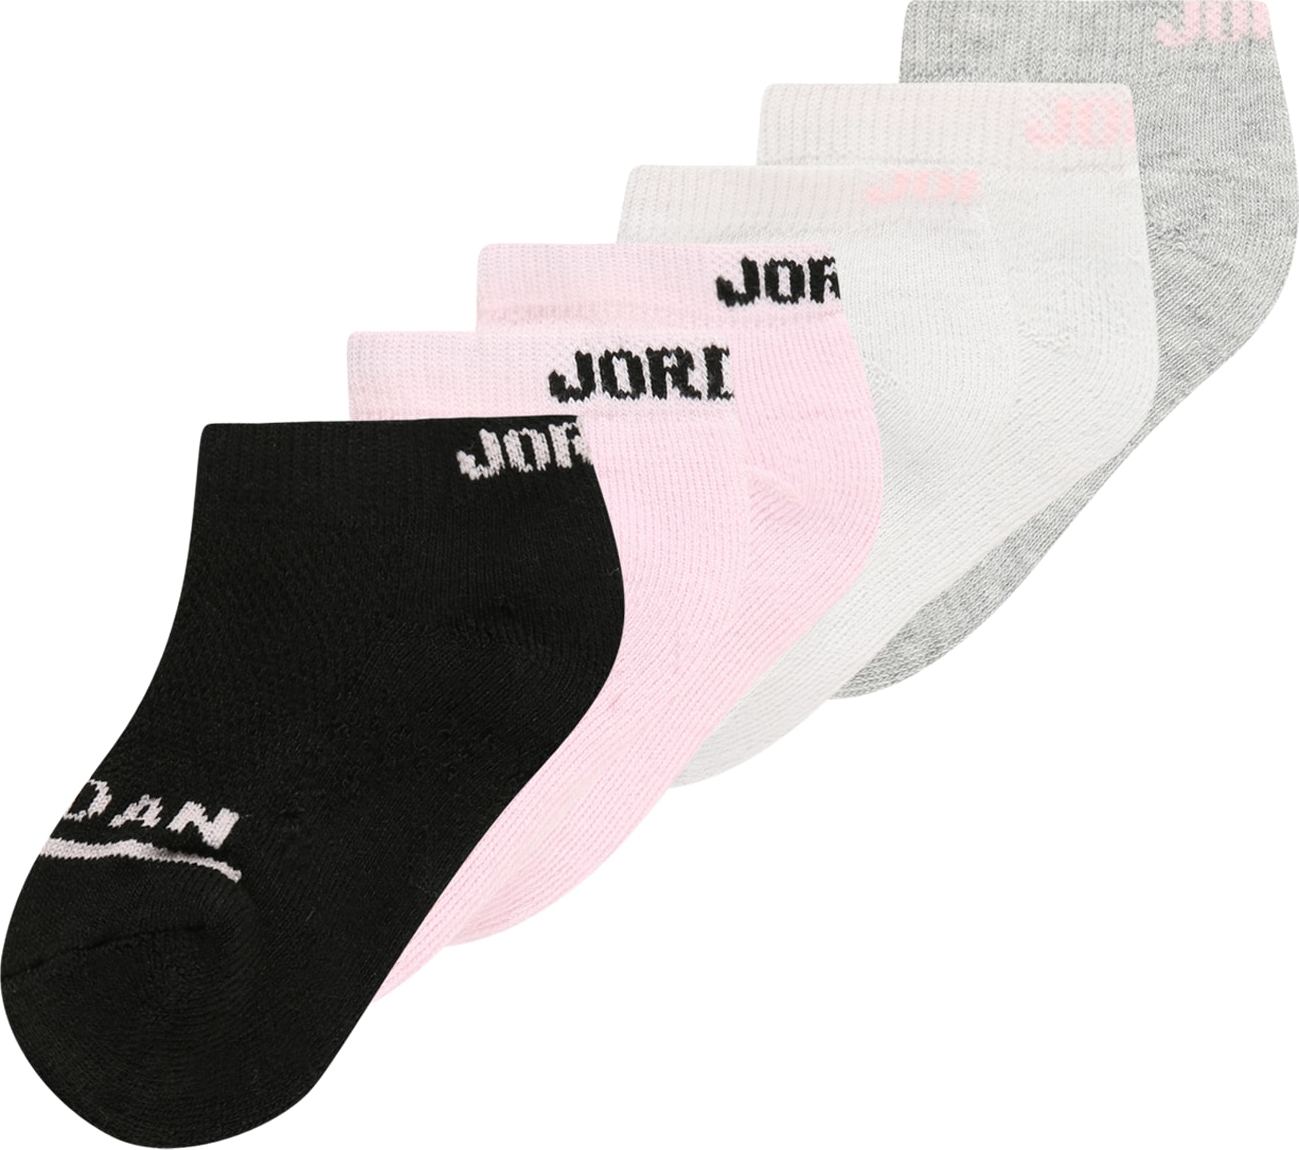 Jordan Ponožky světle šedá / šedý melír / růžová / černá